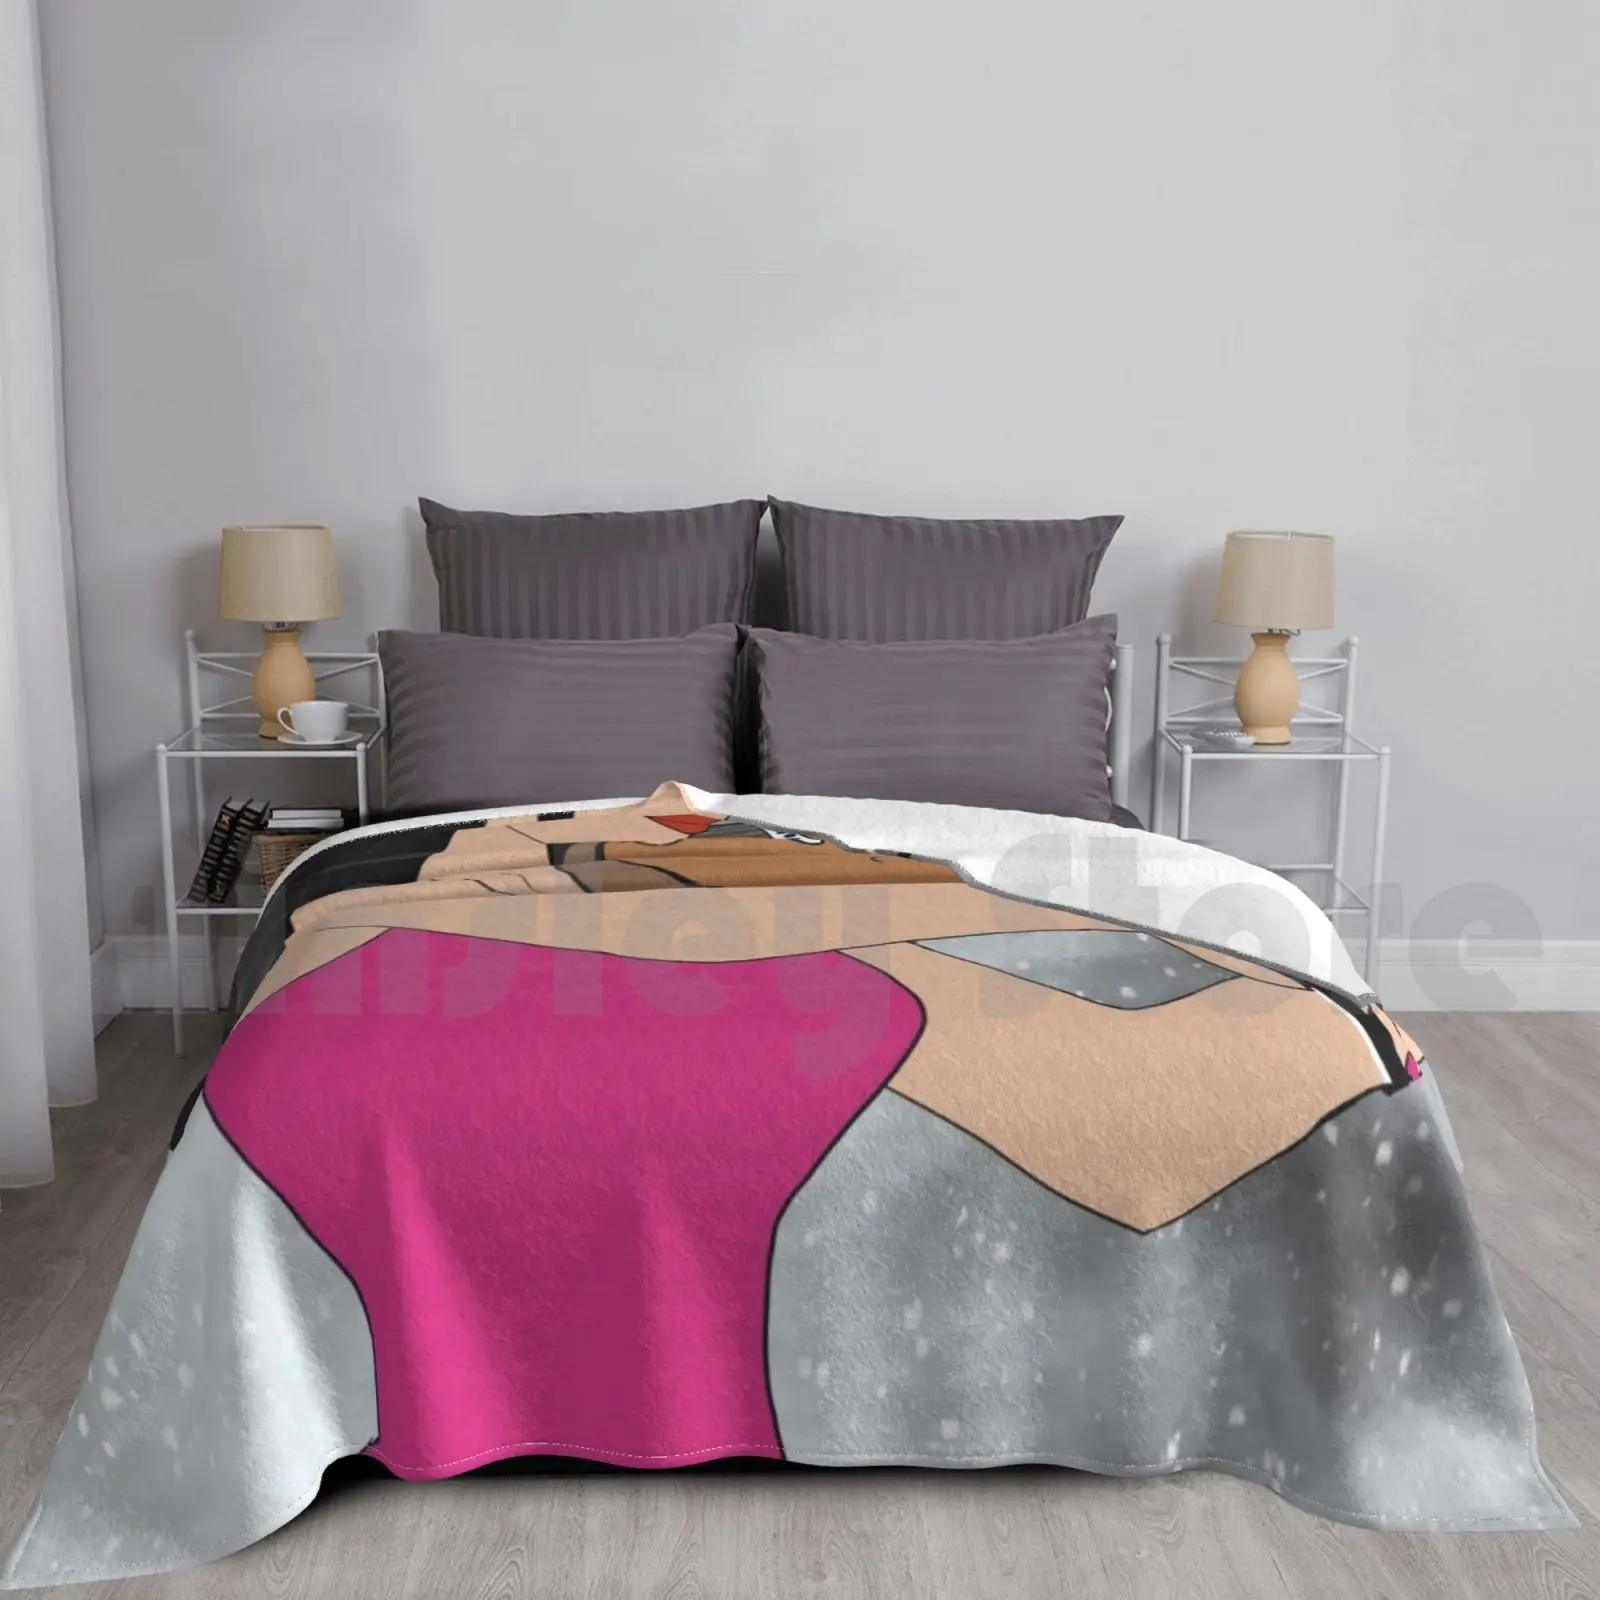 

Женское одеяло для игры на скрипке для дивана-кровати путешествия лицо тело женщина девушка Мгновенная загрузка губы сексуальные